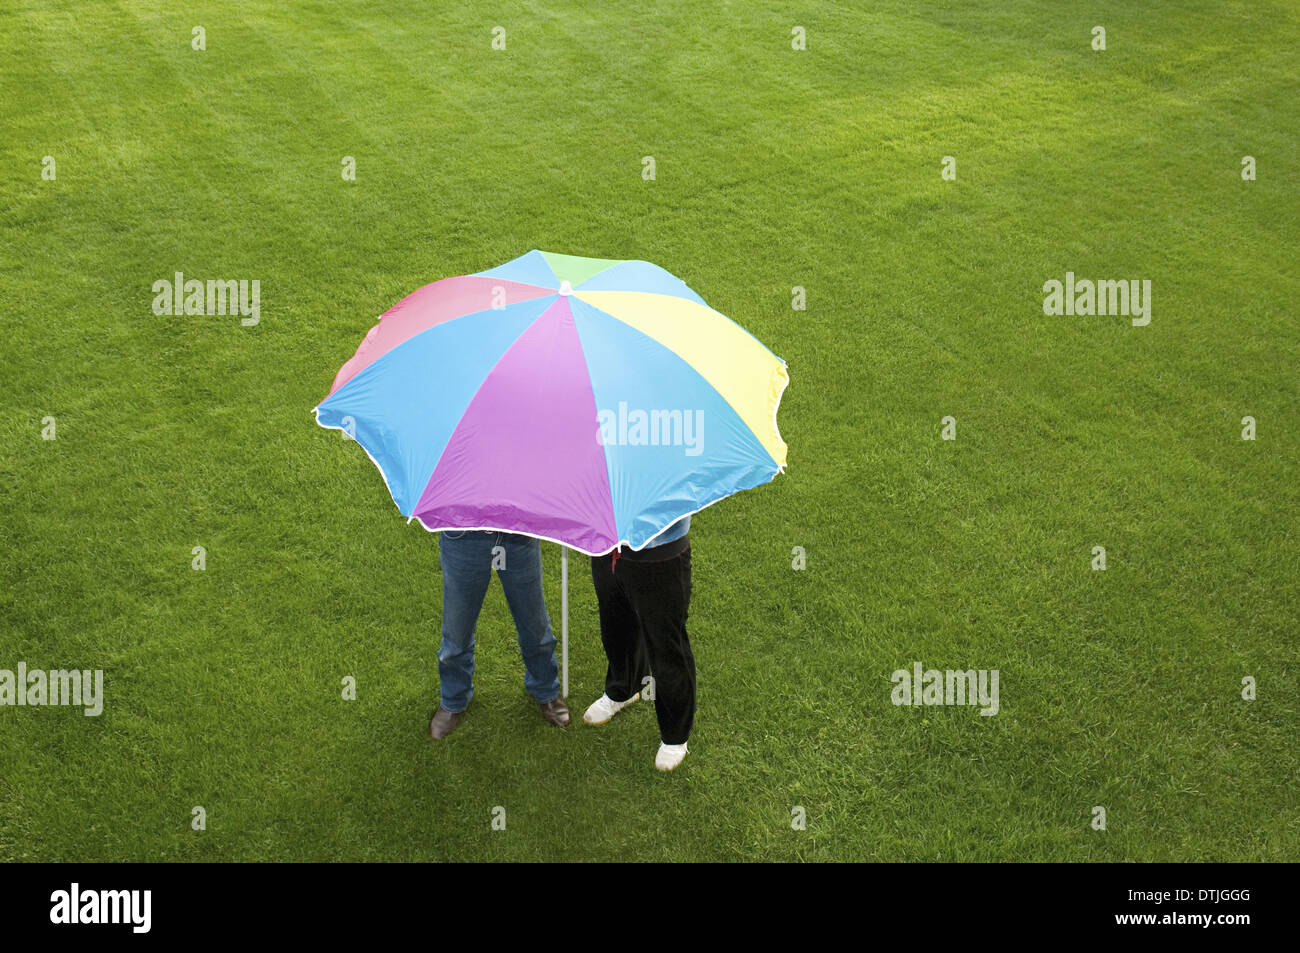 Deux personnes sous un parapluie à rayures sur une pelouse, Angleterre Banque D'Images